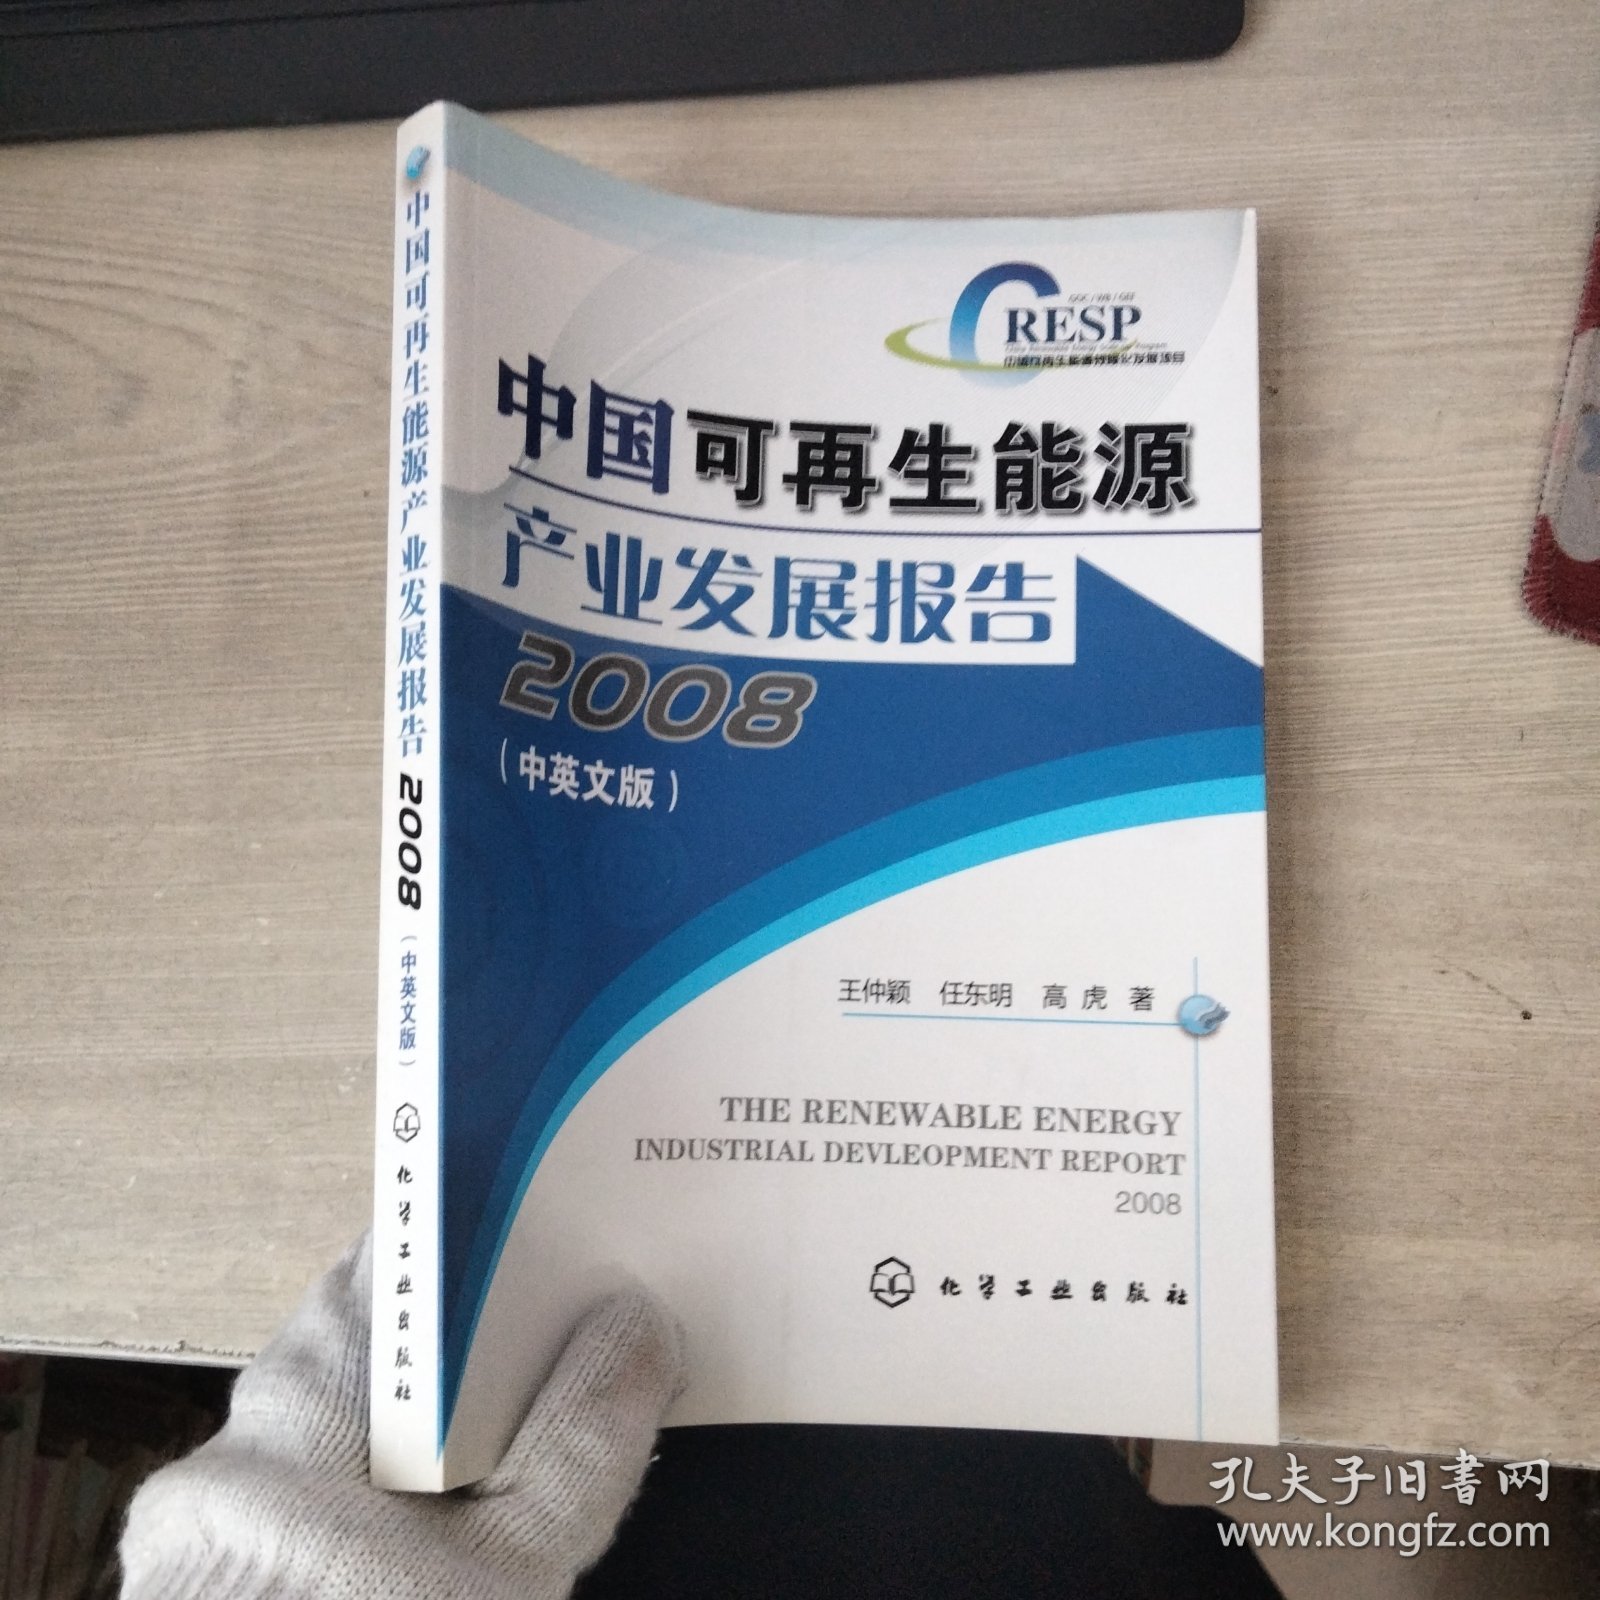 中国可再生能源产业发展报告2008(中英文版)。。...